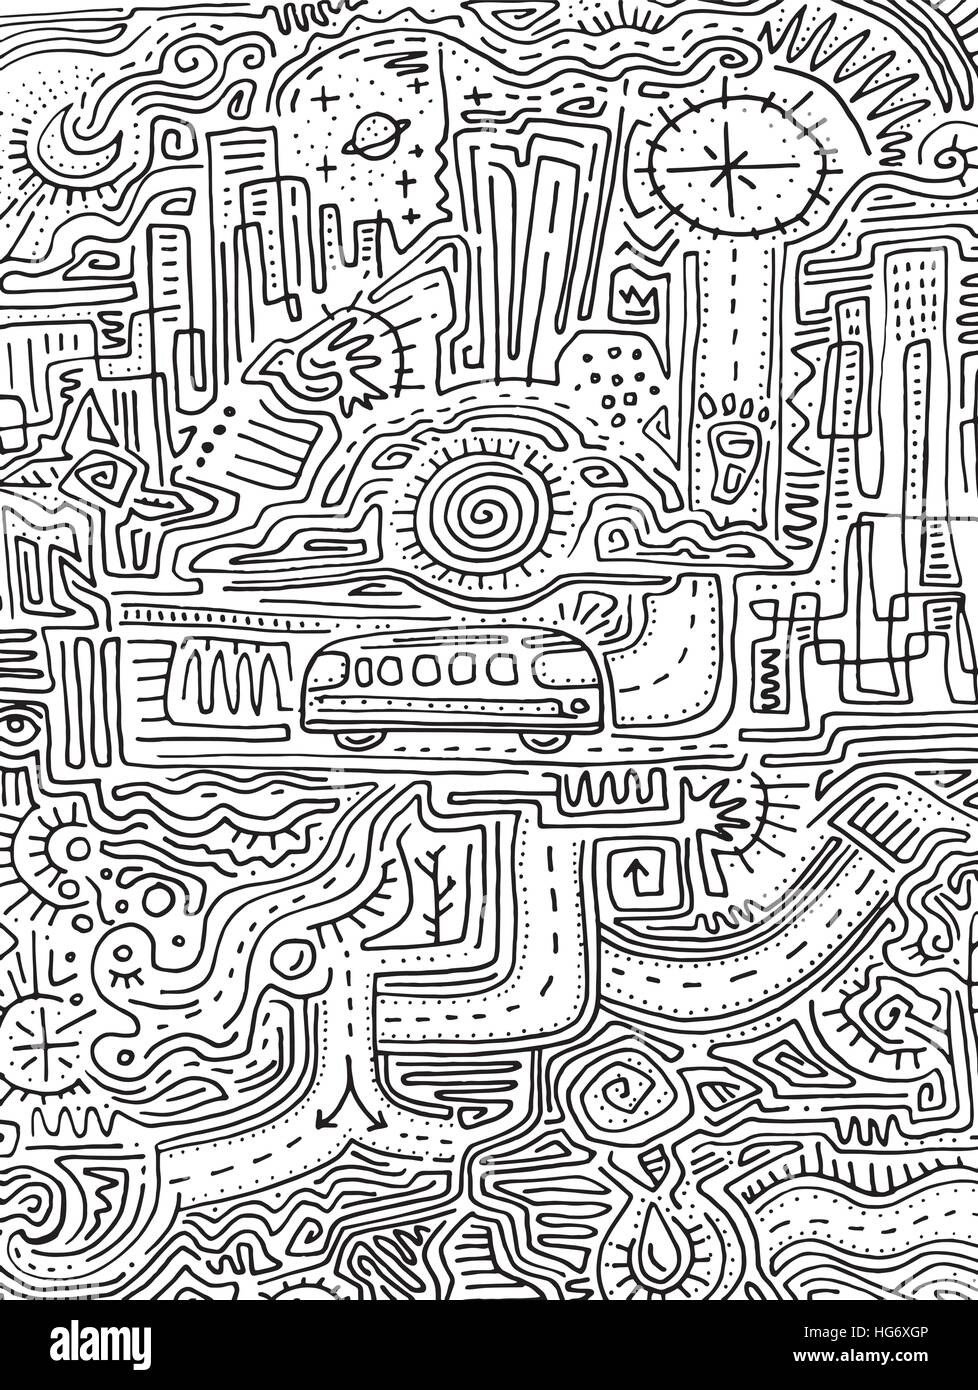 Vektor-Illustration von Hand gezeichnet oder Zeichnung von einem städtischen Labyrinth und Symbolen Stock Vektor